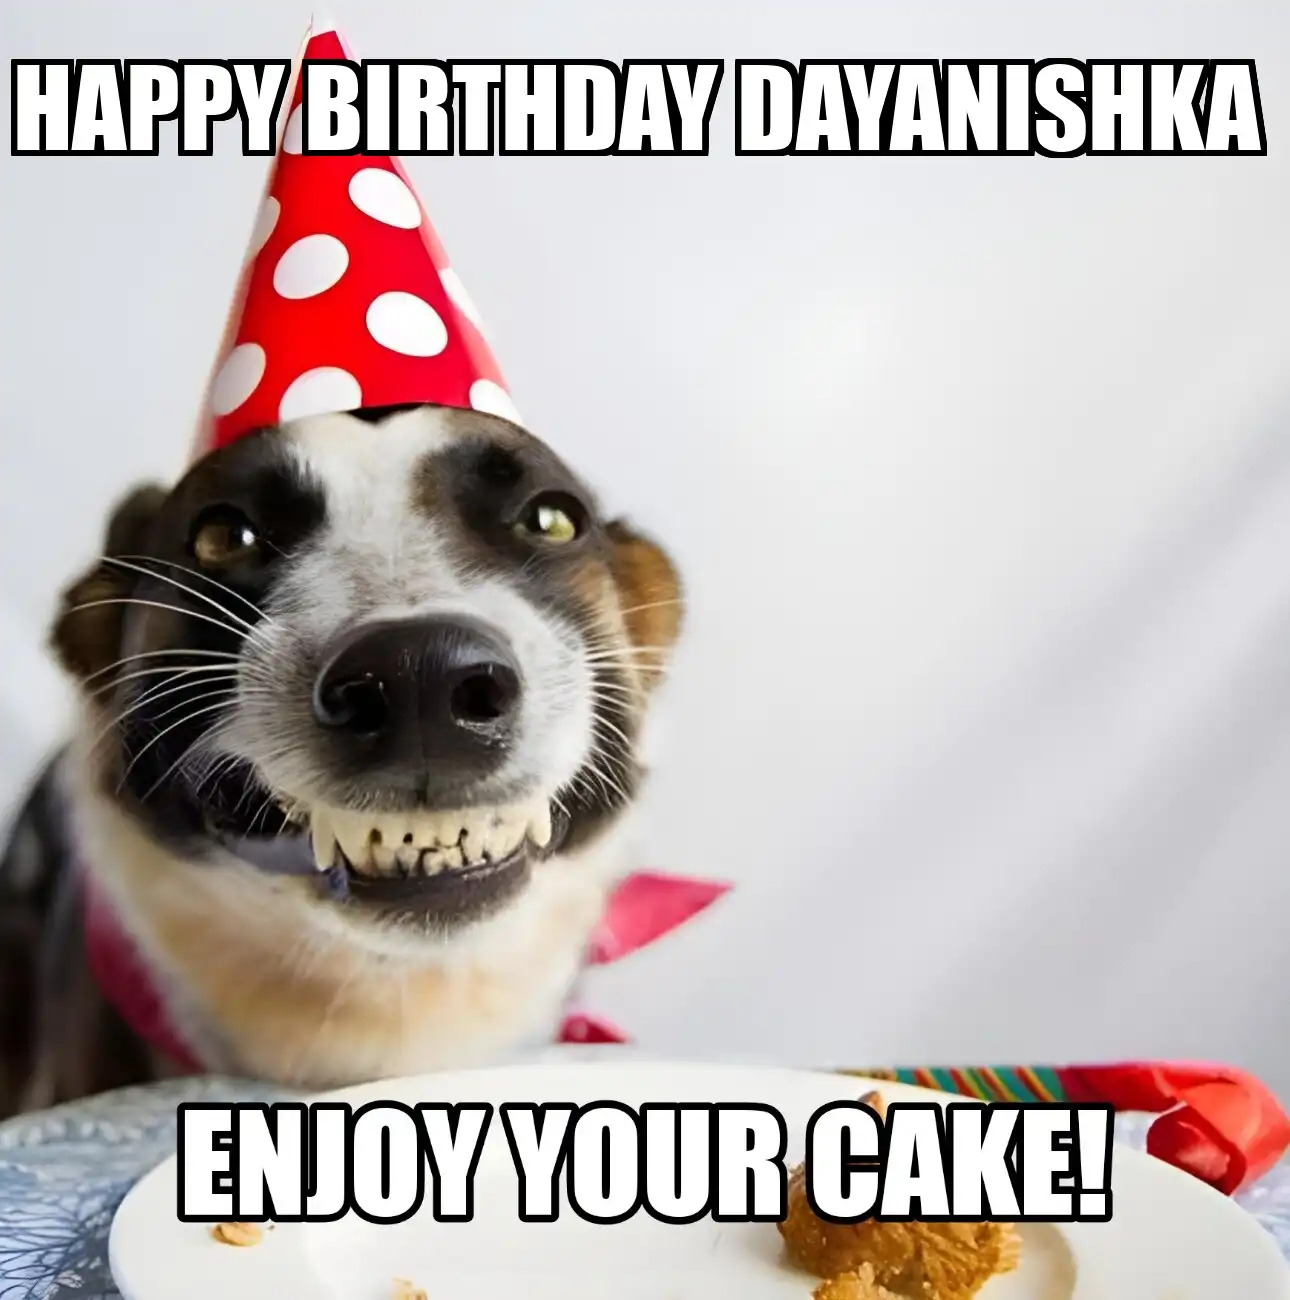 Happy Birthday Dayanishka Enjoy Your Cake Dog Meme